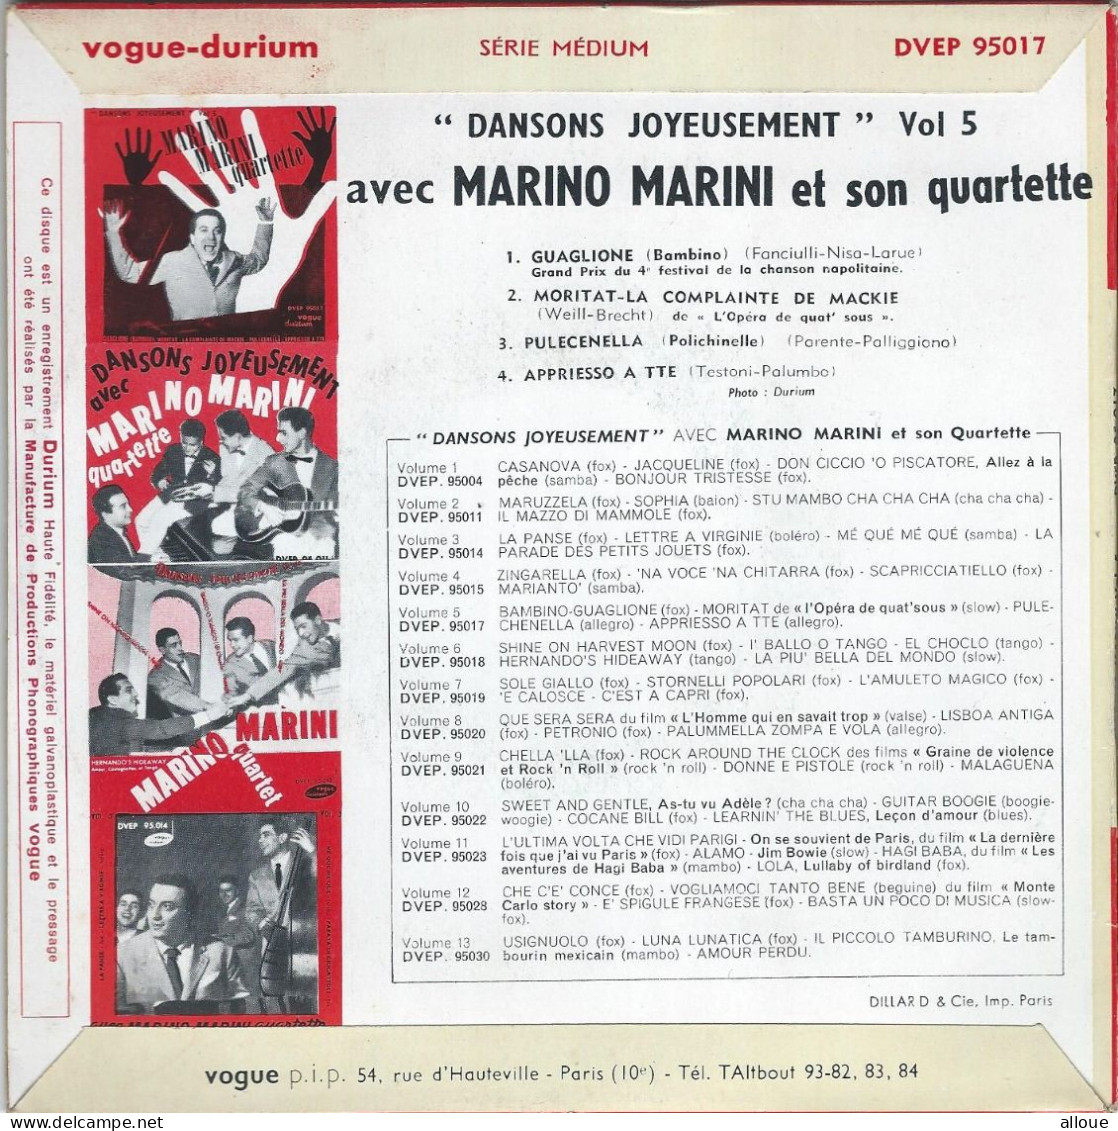 MARINO MARINI QUARTETTE - FR EP - GUAGLIONE (BAMBINO) + 3 - Autres - Musique Italienne